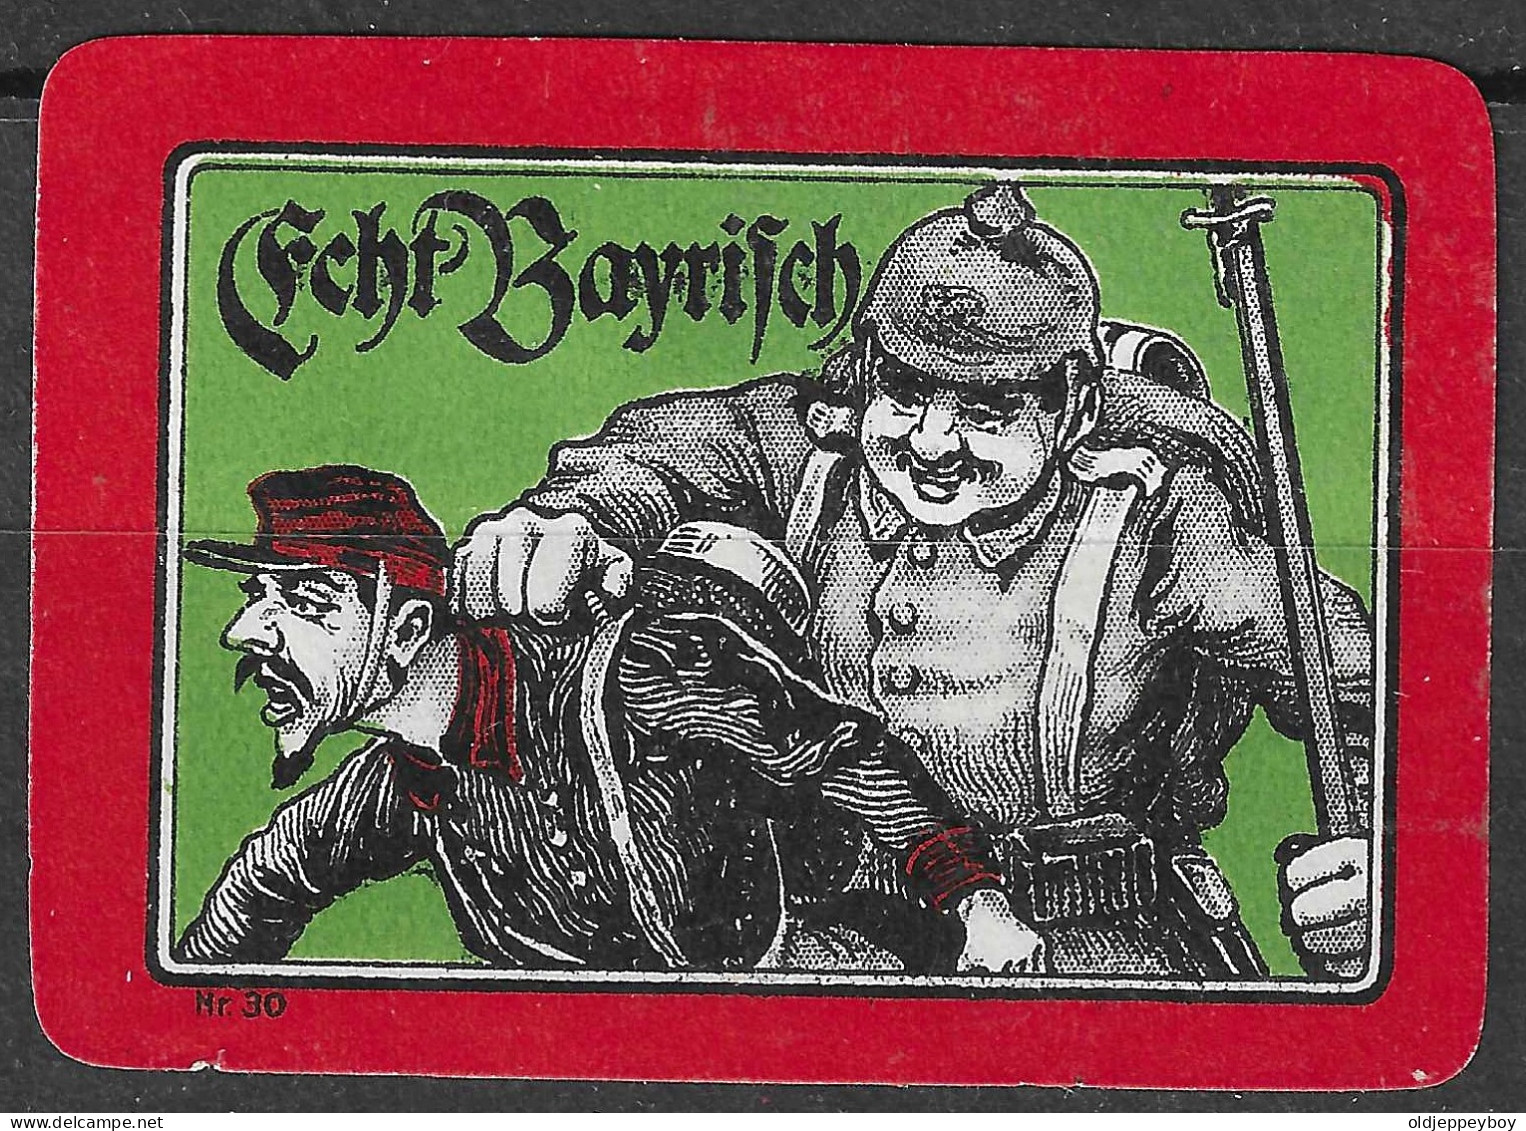 1914 DEUTSCHLAND WW1 GERMANY Propaganda Reklamemarke VIGNETTE Echt Bayrisch - WO1